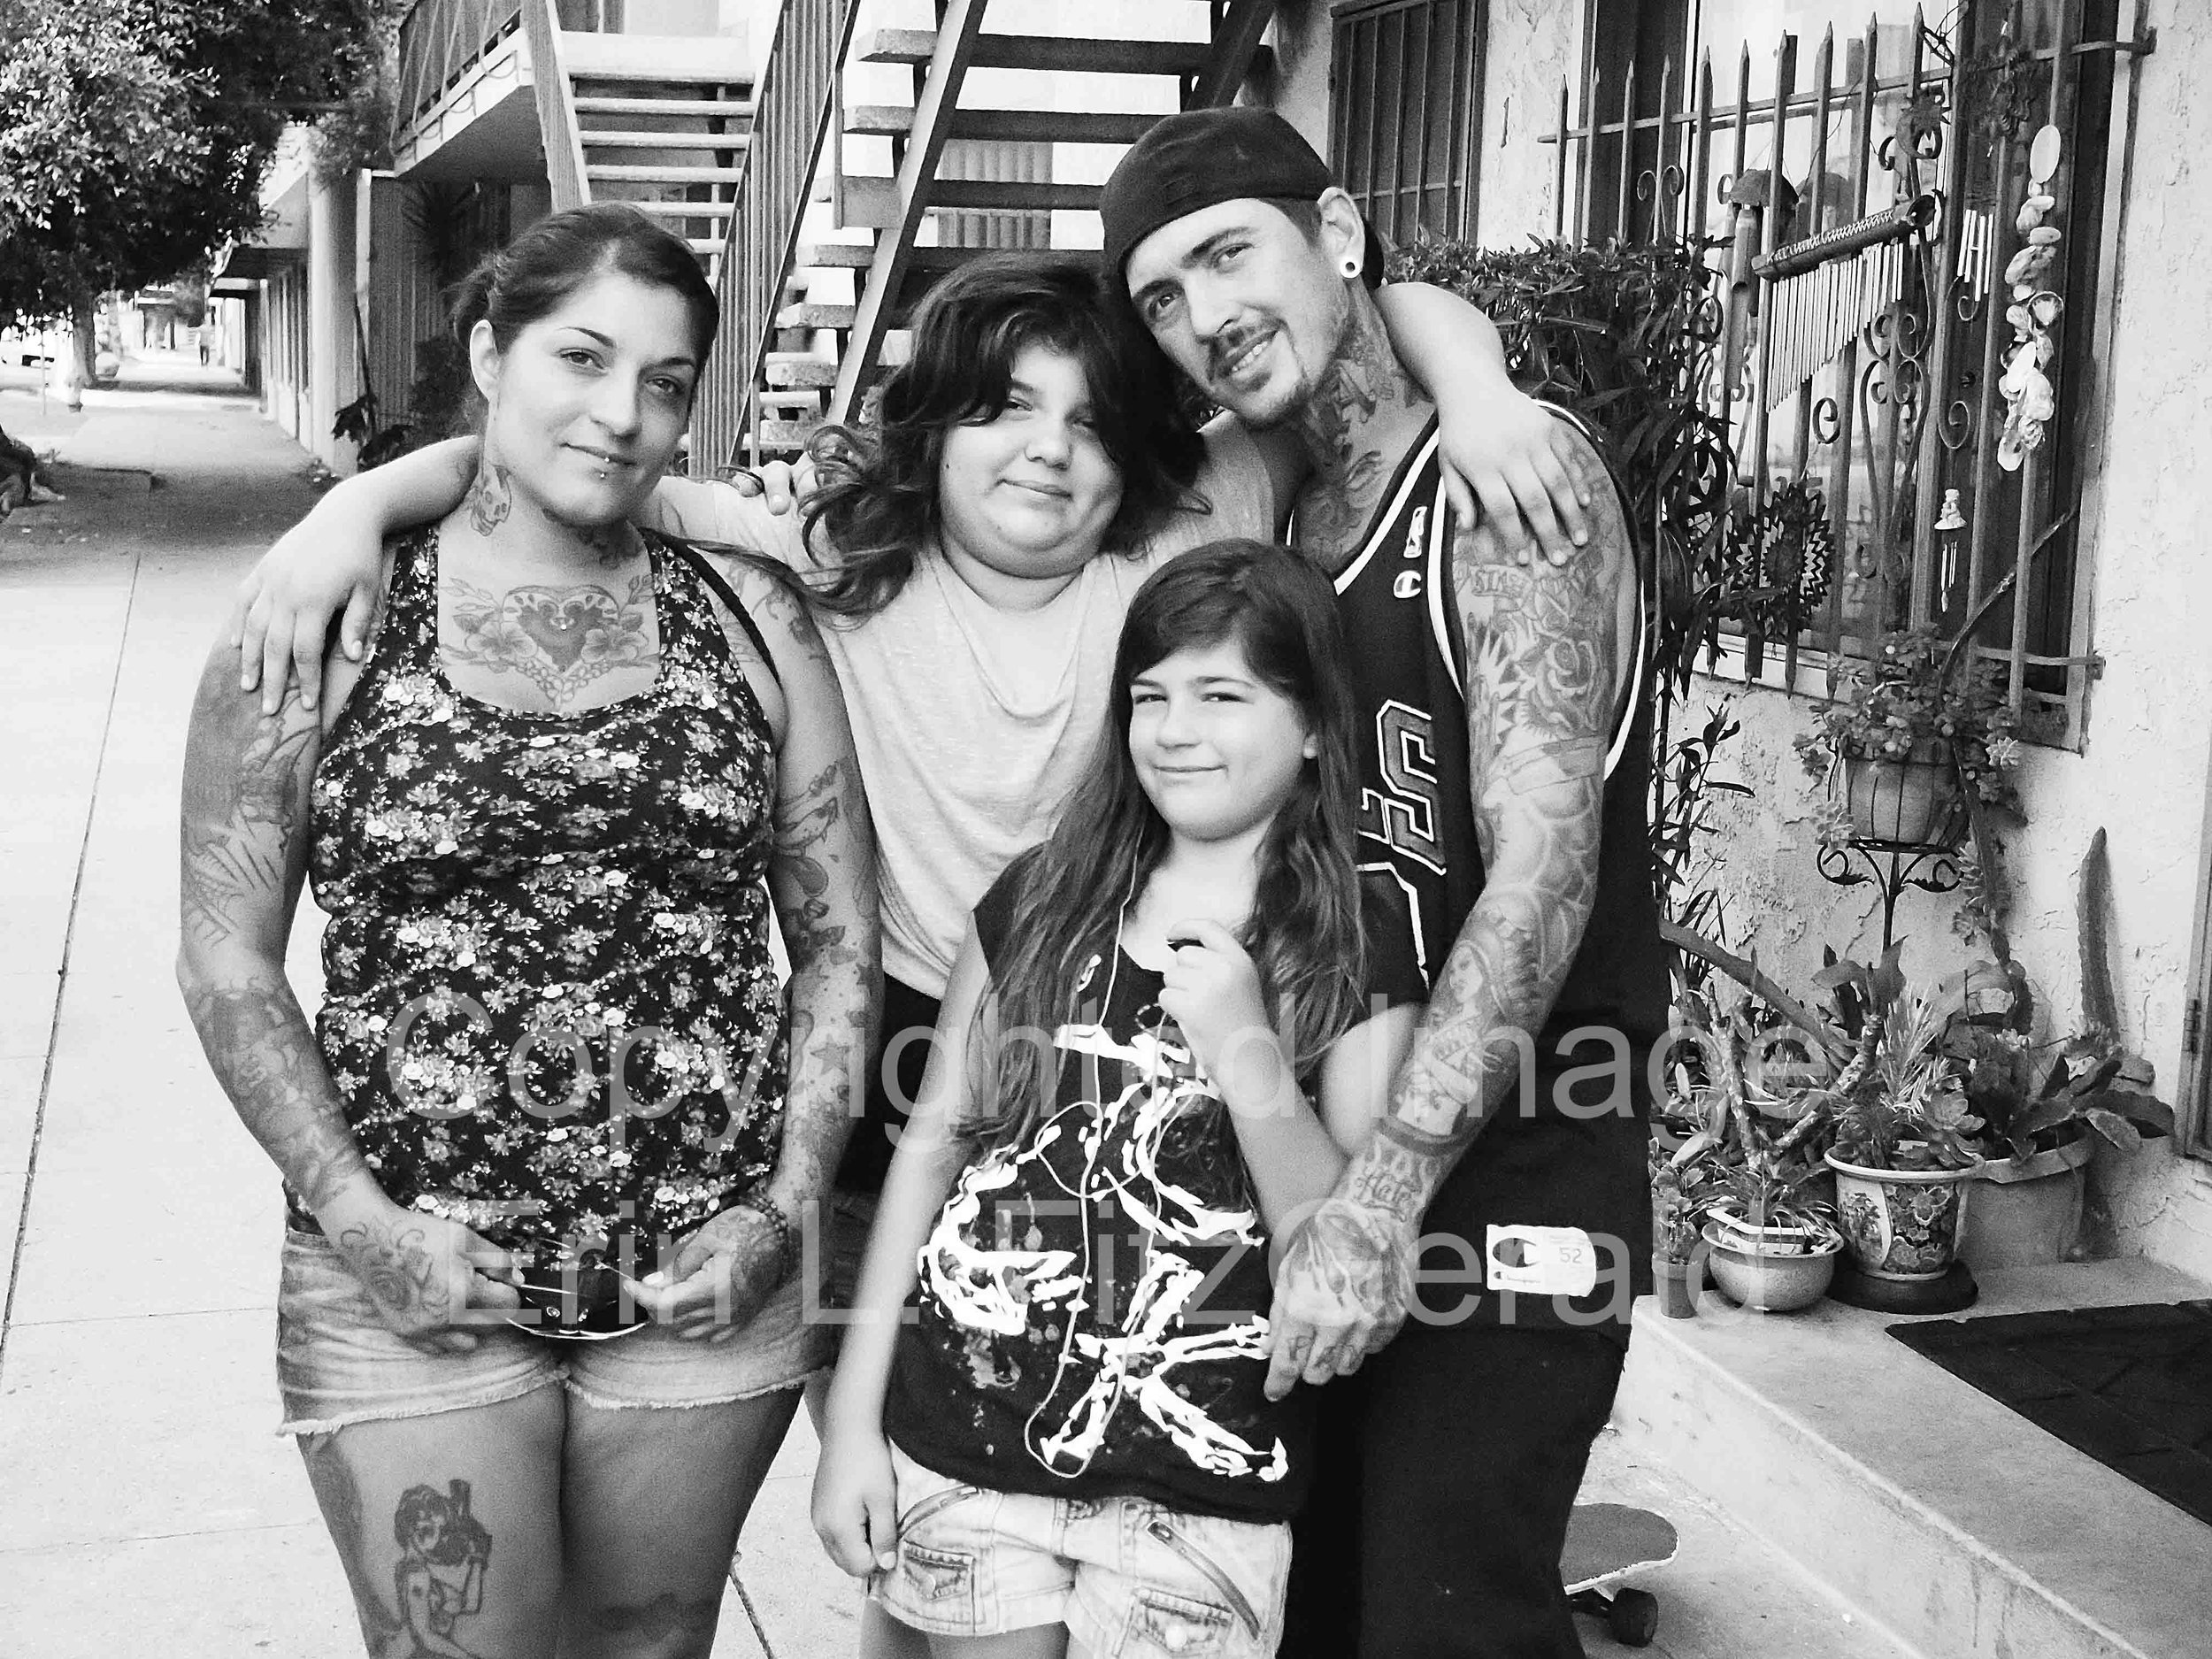  Tattooed Family, Venice, California, 2012 